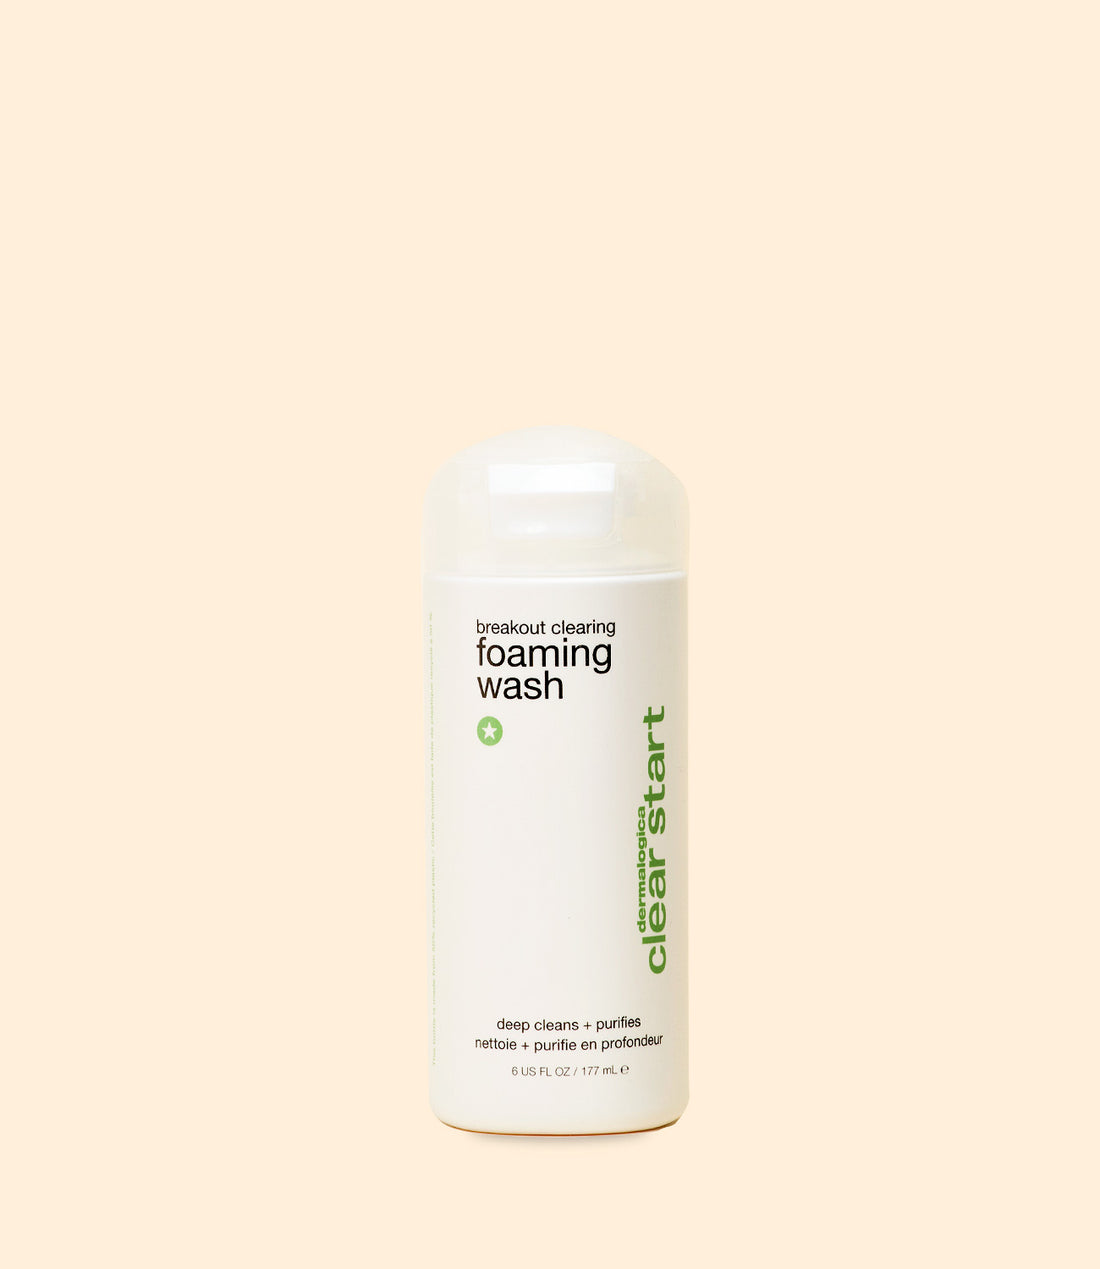 Mousse nettoyante pour le visage de la gamme Clear Start Breakout clearing foaming wash par Dermalogica 177 ml